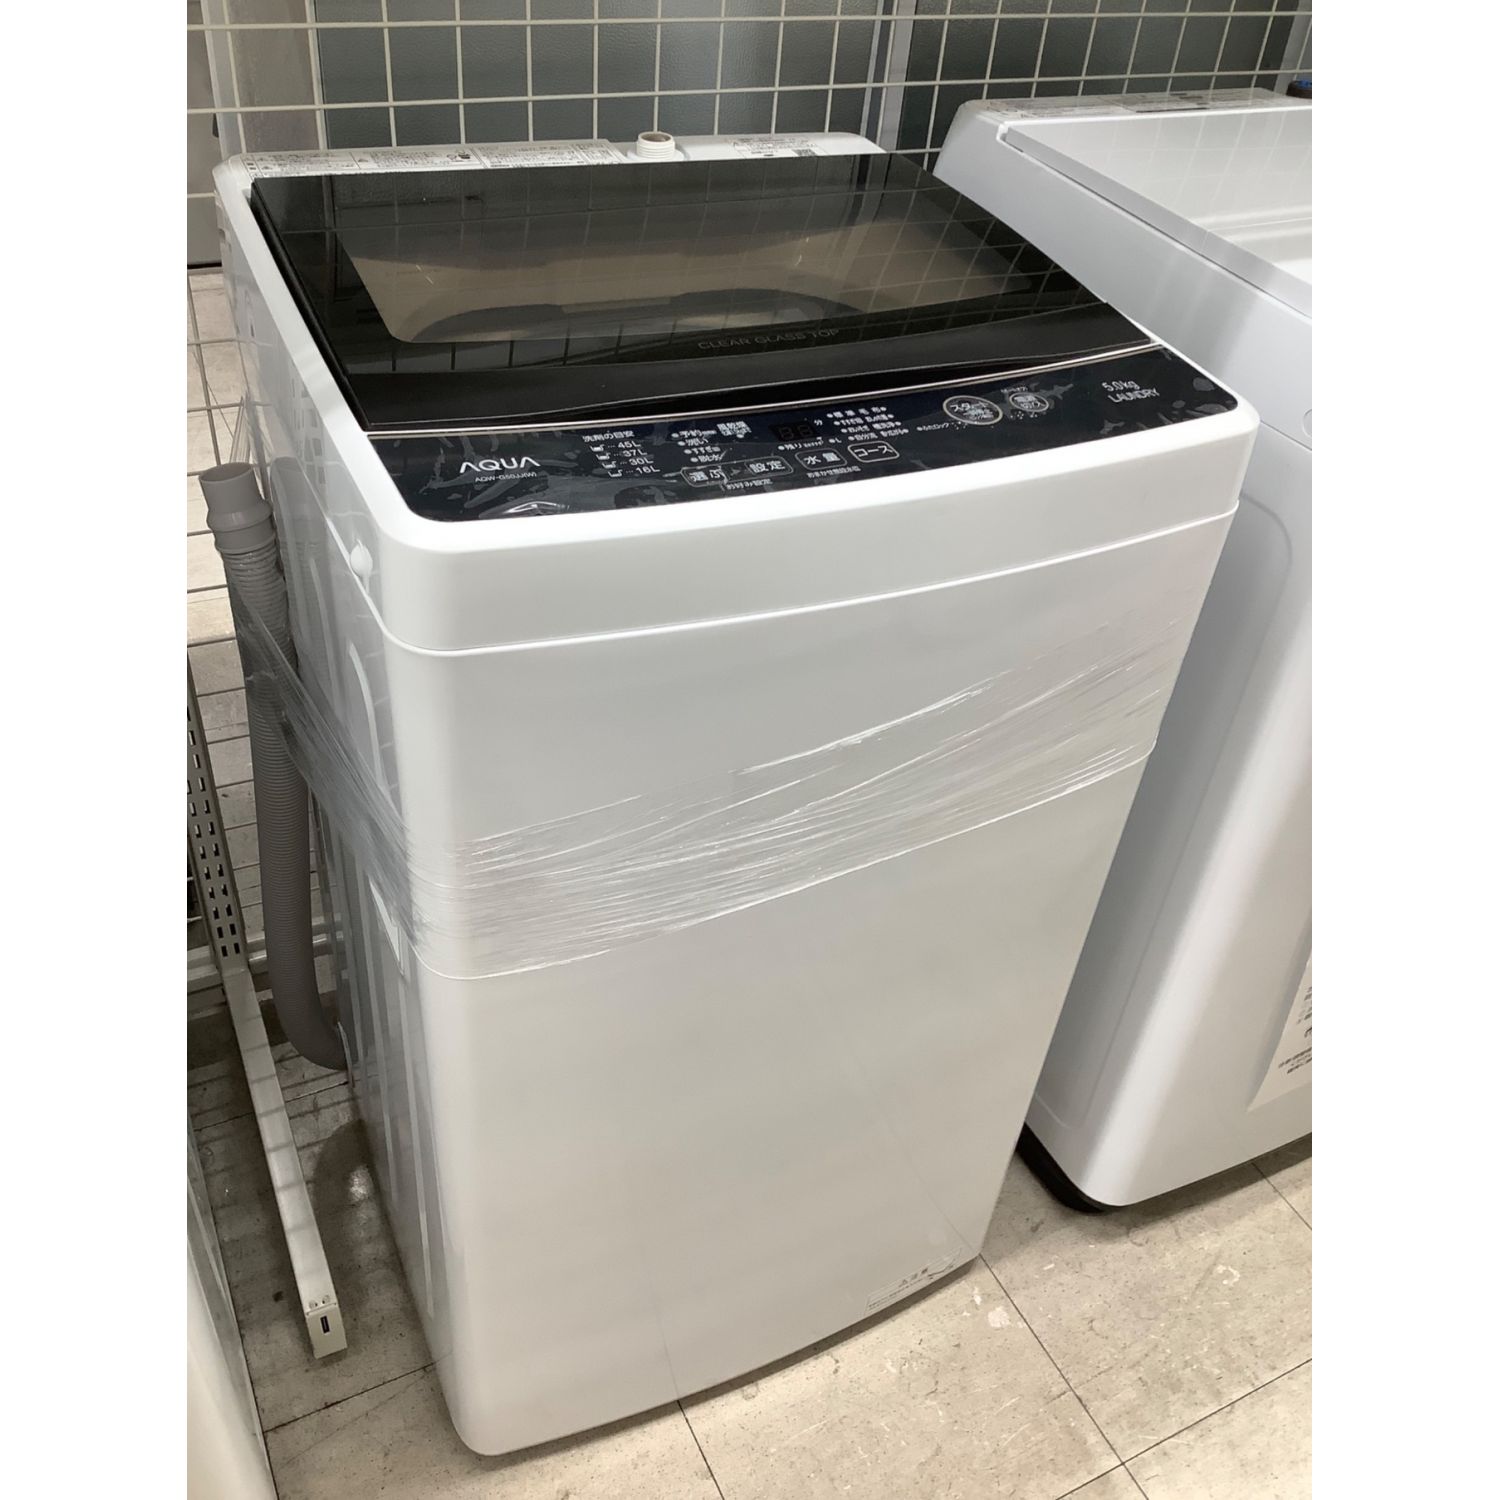 AQUA (アクア) 全自動洗濯機 ○ 5.0kg AQW-G50JJ 2021年製 